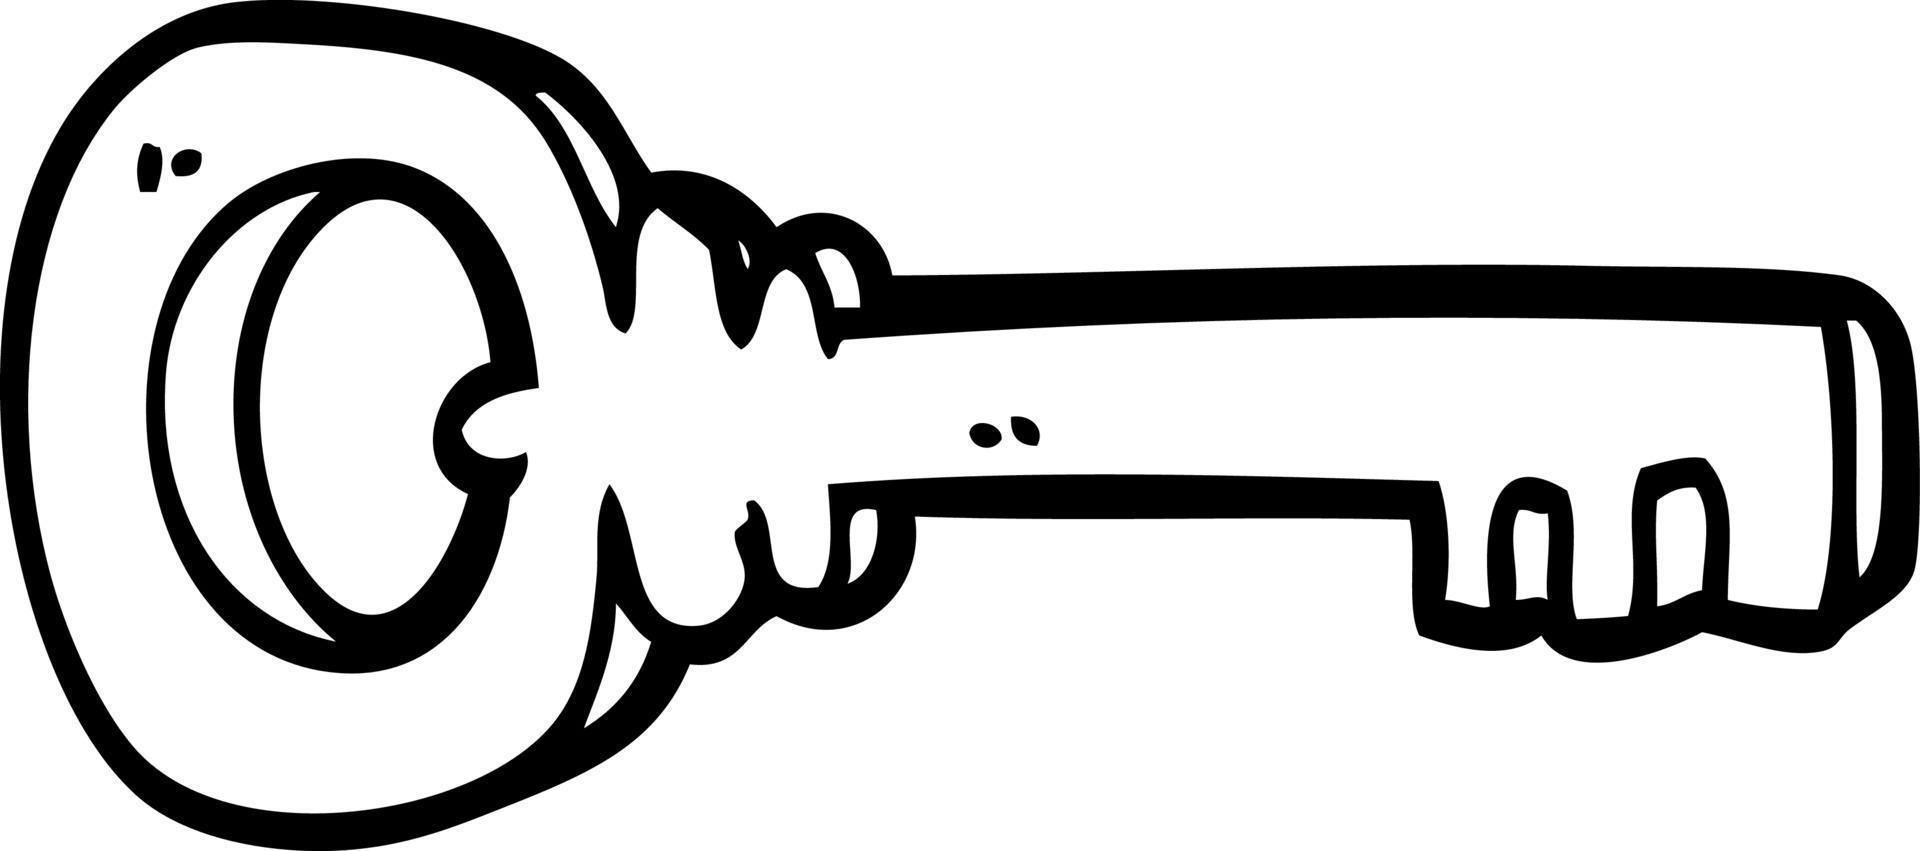 chave de metal de desenho de linha de desenho vetor